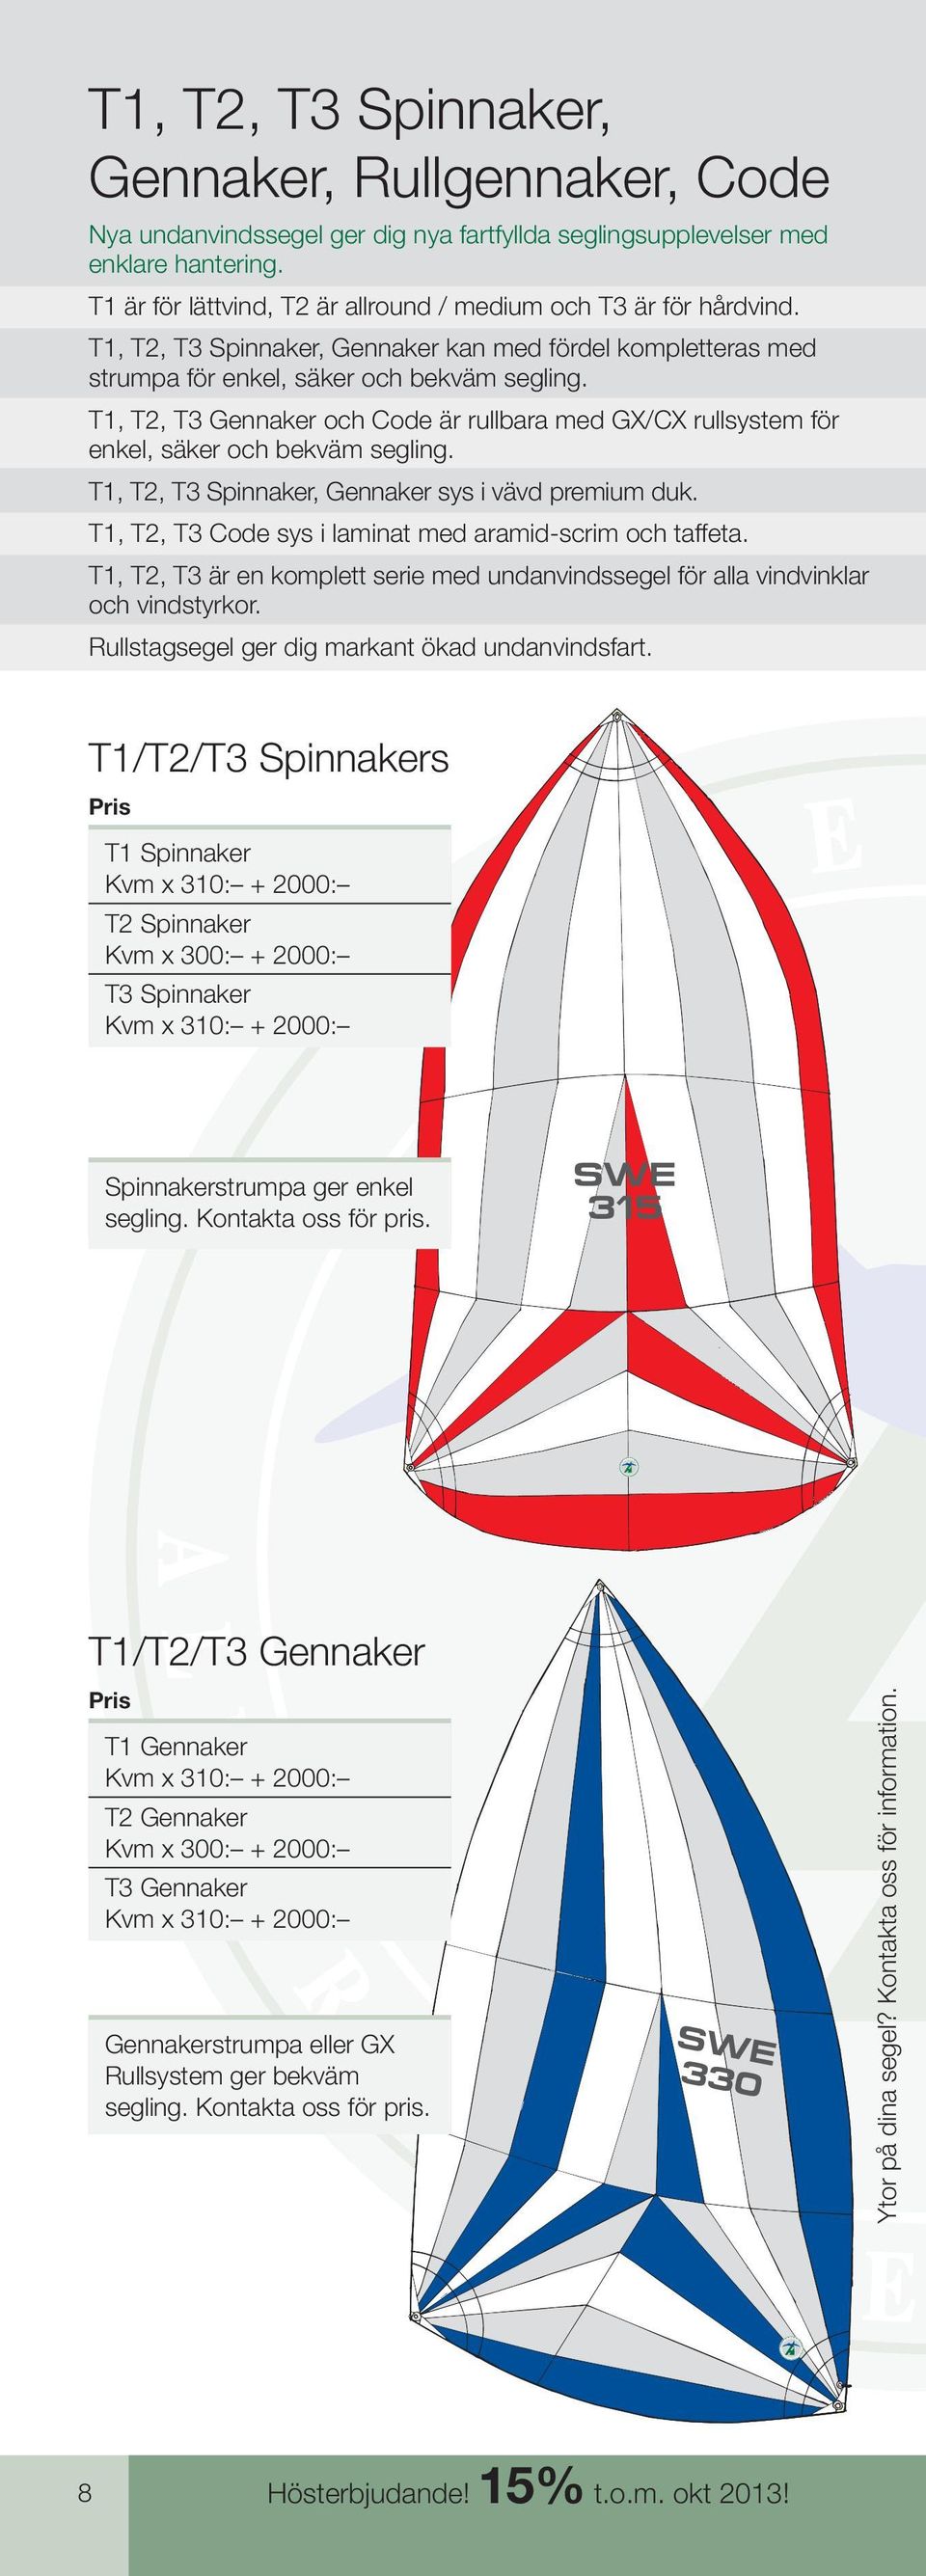 T, T2, T3 Gennaker och Code är rullbara med GX/CX rullsystem för enkel, säker och bekväm segling. T, T2, T3 pinnaker, Gennaker sys i vävd premium duk.